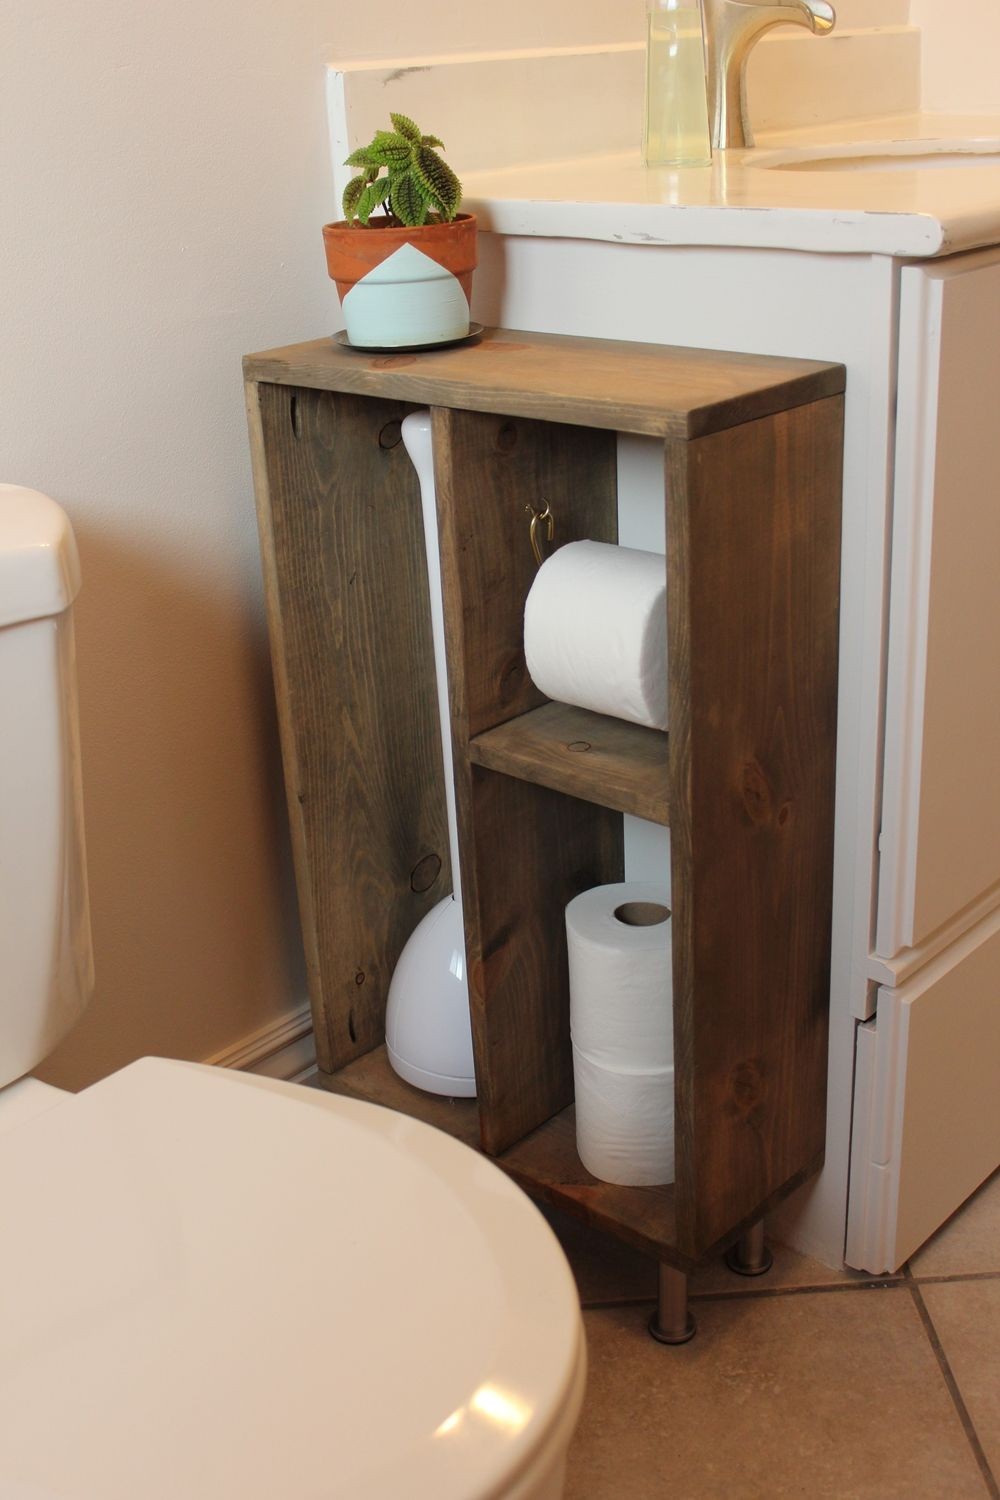 DIY Vanity Organizer
 Hide Unsightly Toilet Items with this DIY Side Vanity